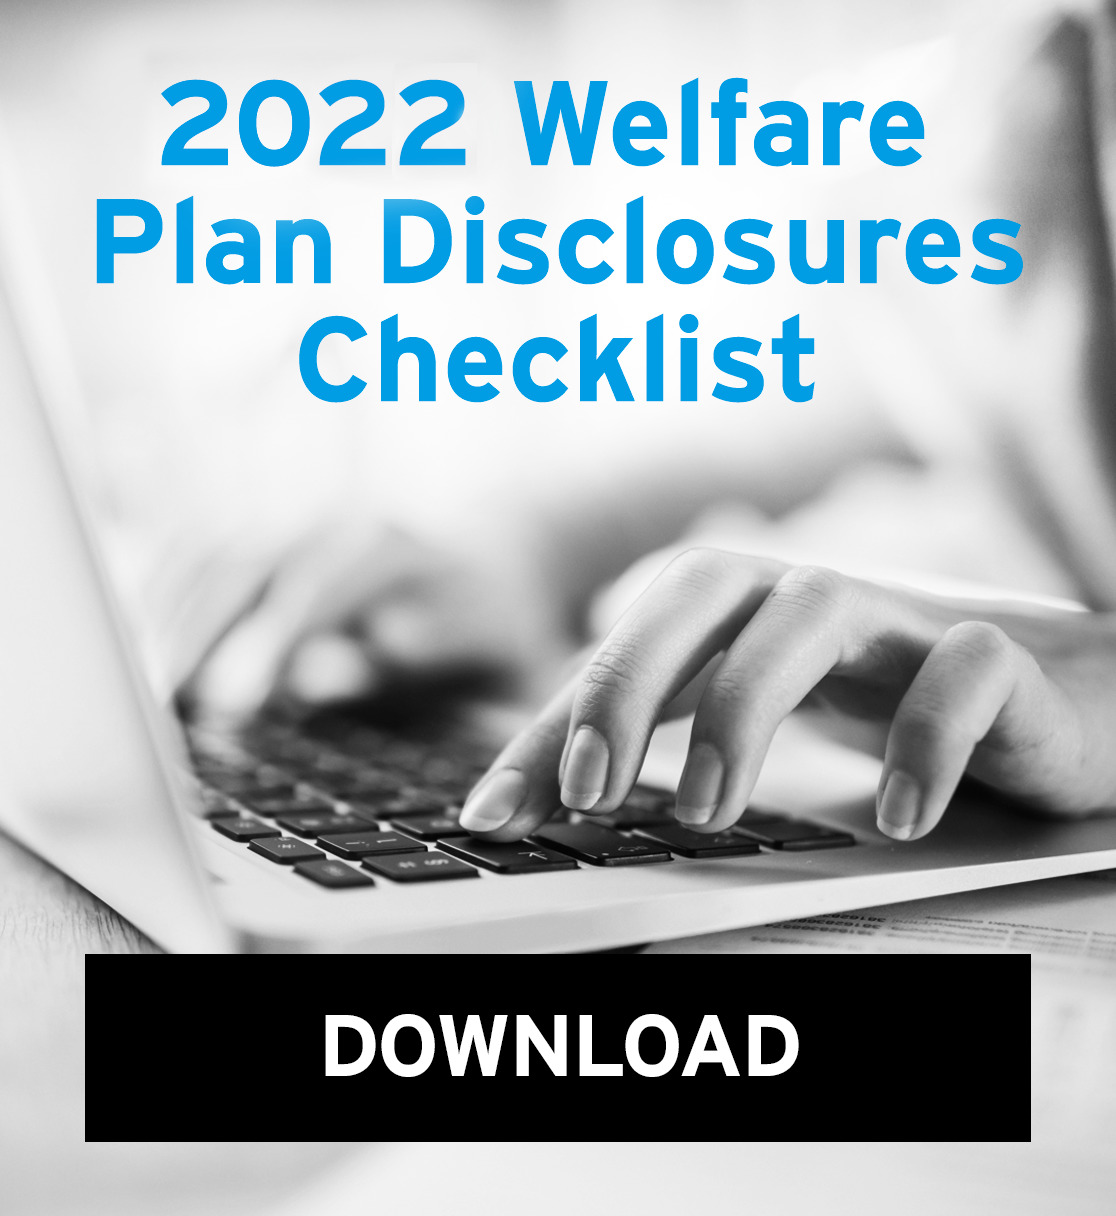 2020 Welfare Plan Disclosures Checklist